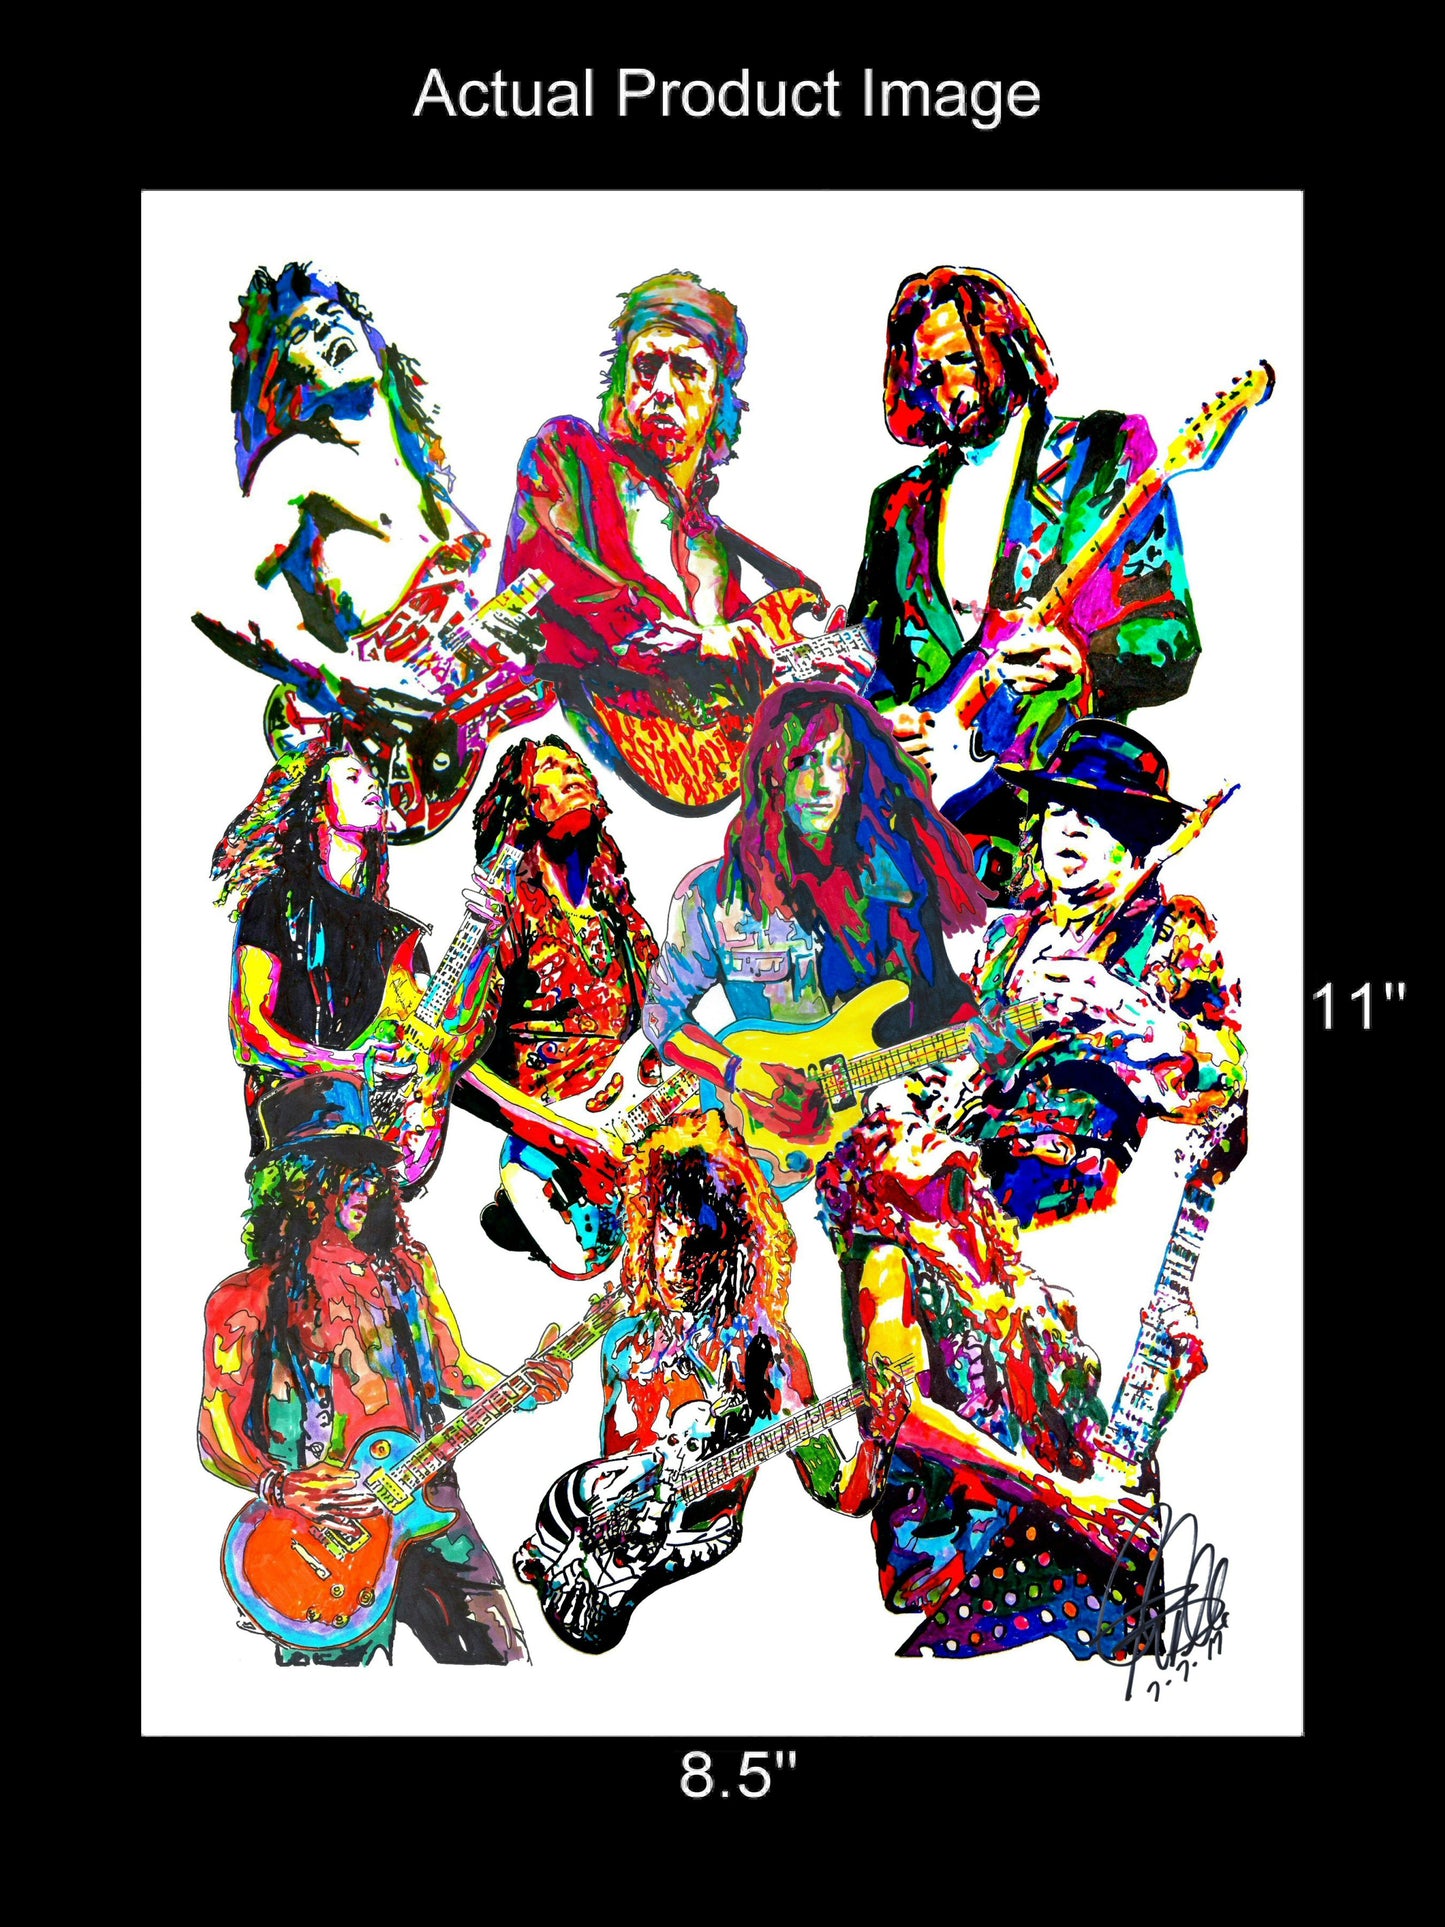 80s Guitar Players Van Halen Rhoads SRV Music Poster Print Wall Art 8.5x11